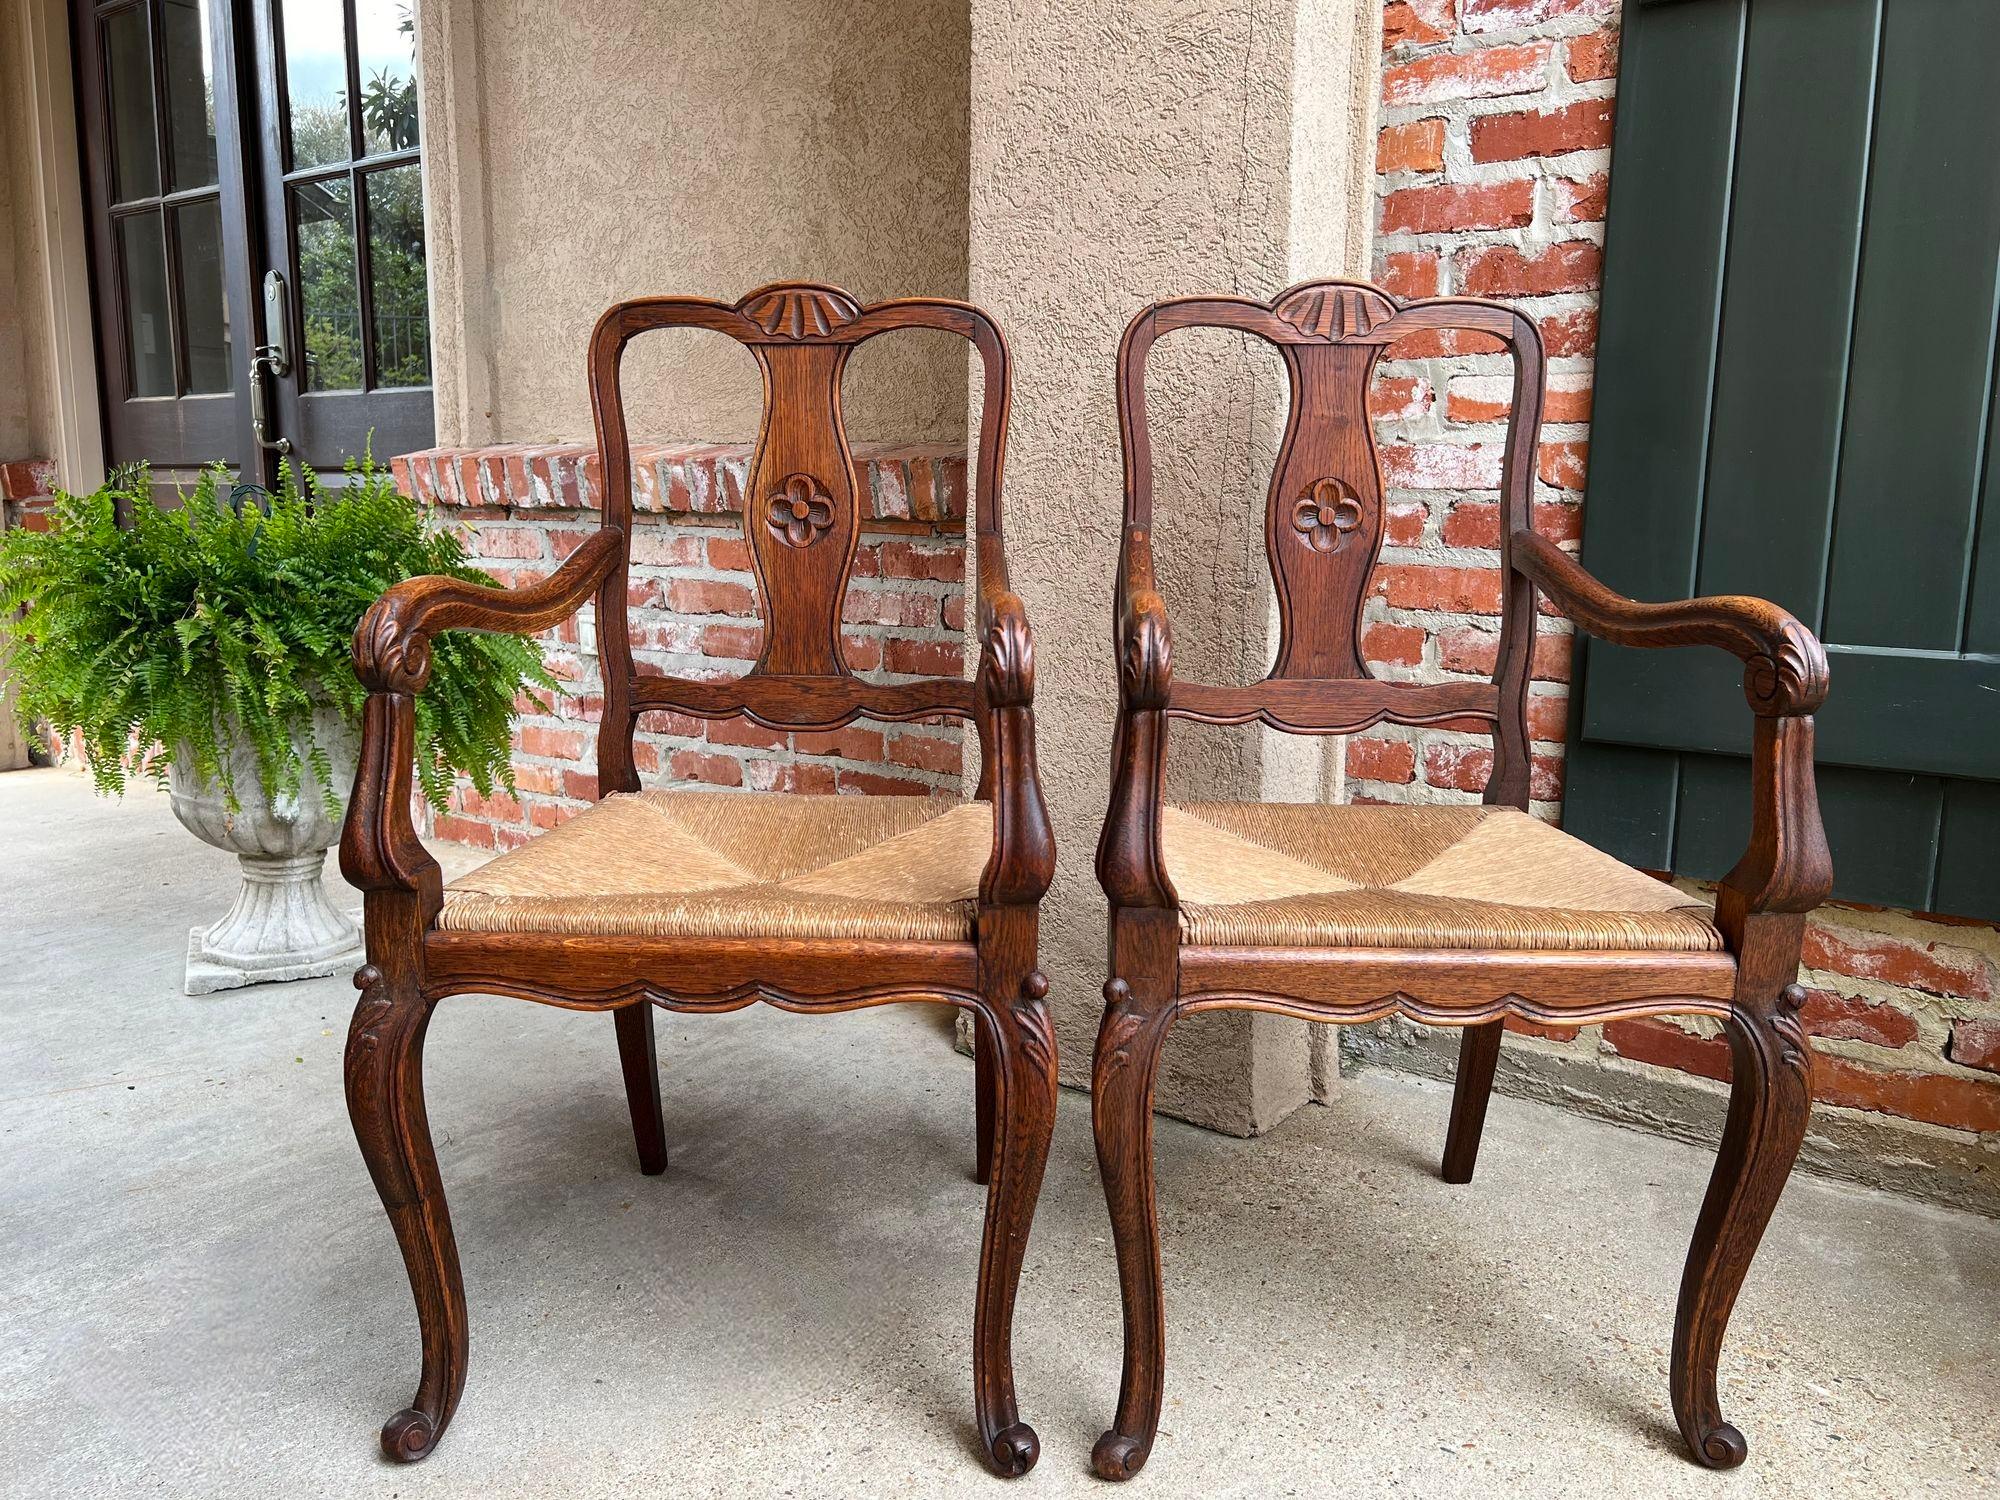 Direkt aus Frankreich, ein hübsches Paar antiker französischer Sessel im klassischen französischen Stil, perfekt für jede Sitzecke, vom DEN bis zum Familienzimmer, der Küche oder dem Esszimmer, zeitloser Stil, der zu jedem Dekor